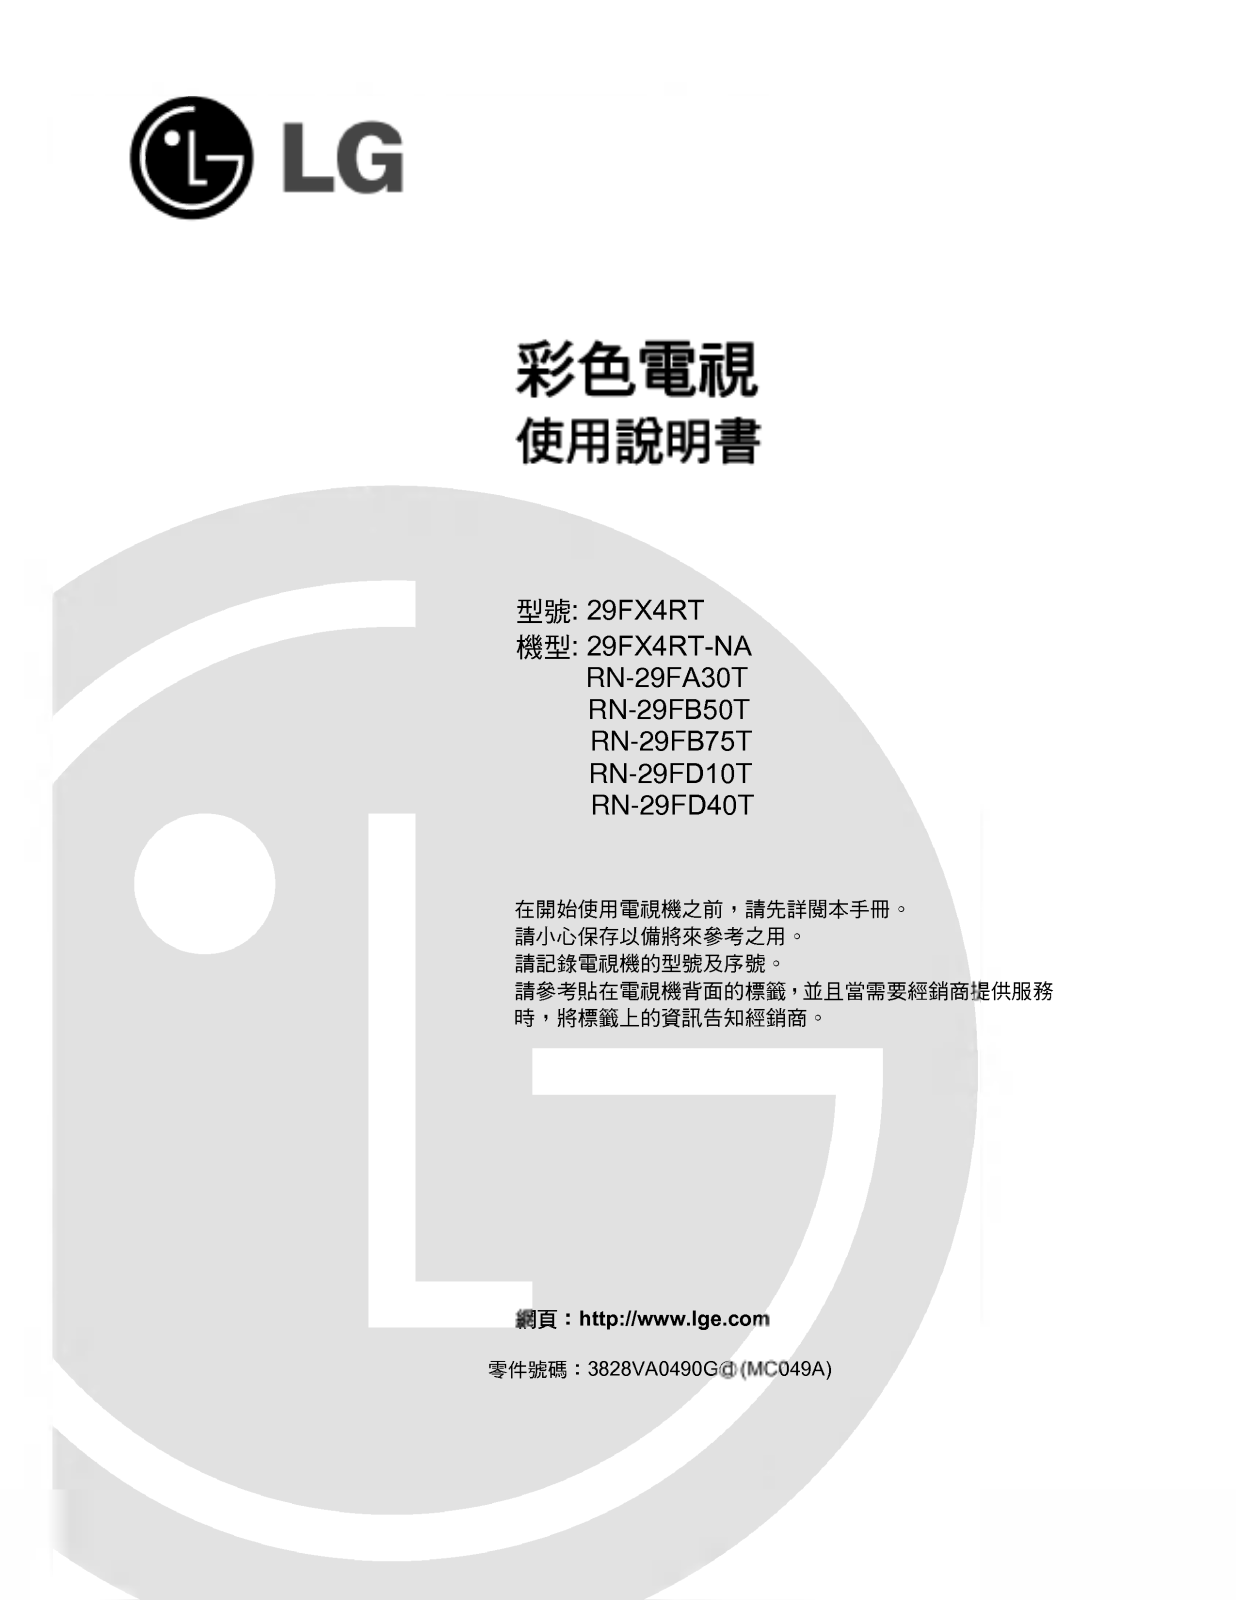 LG RN-29FD40T User manual